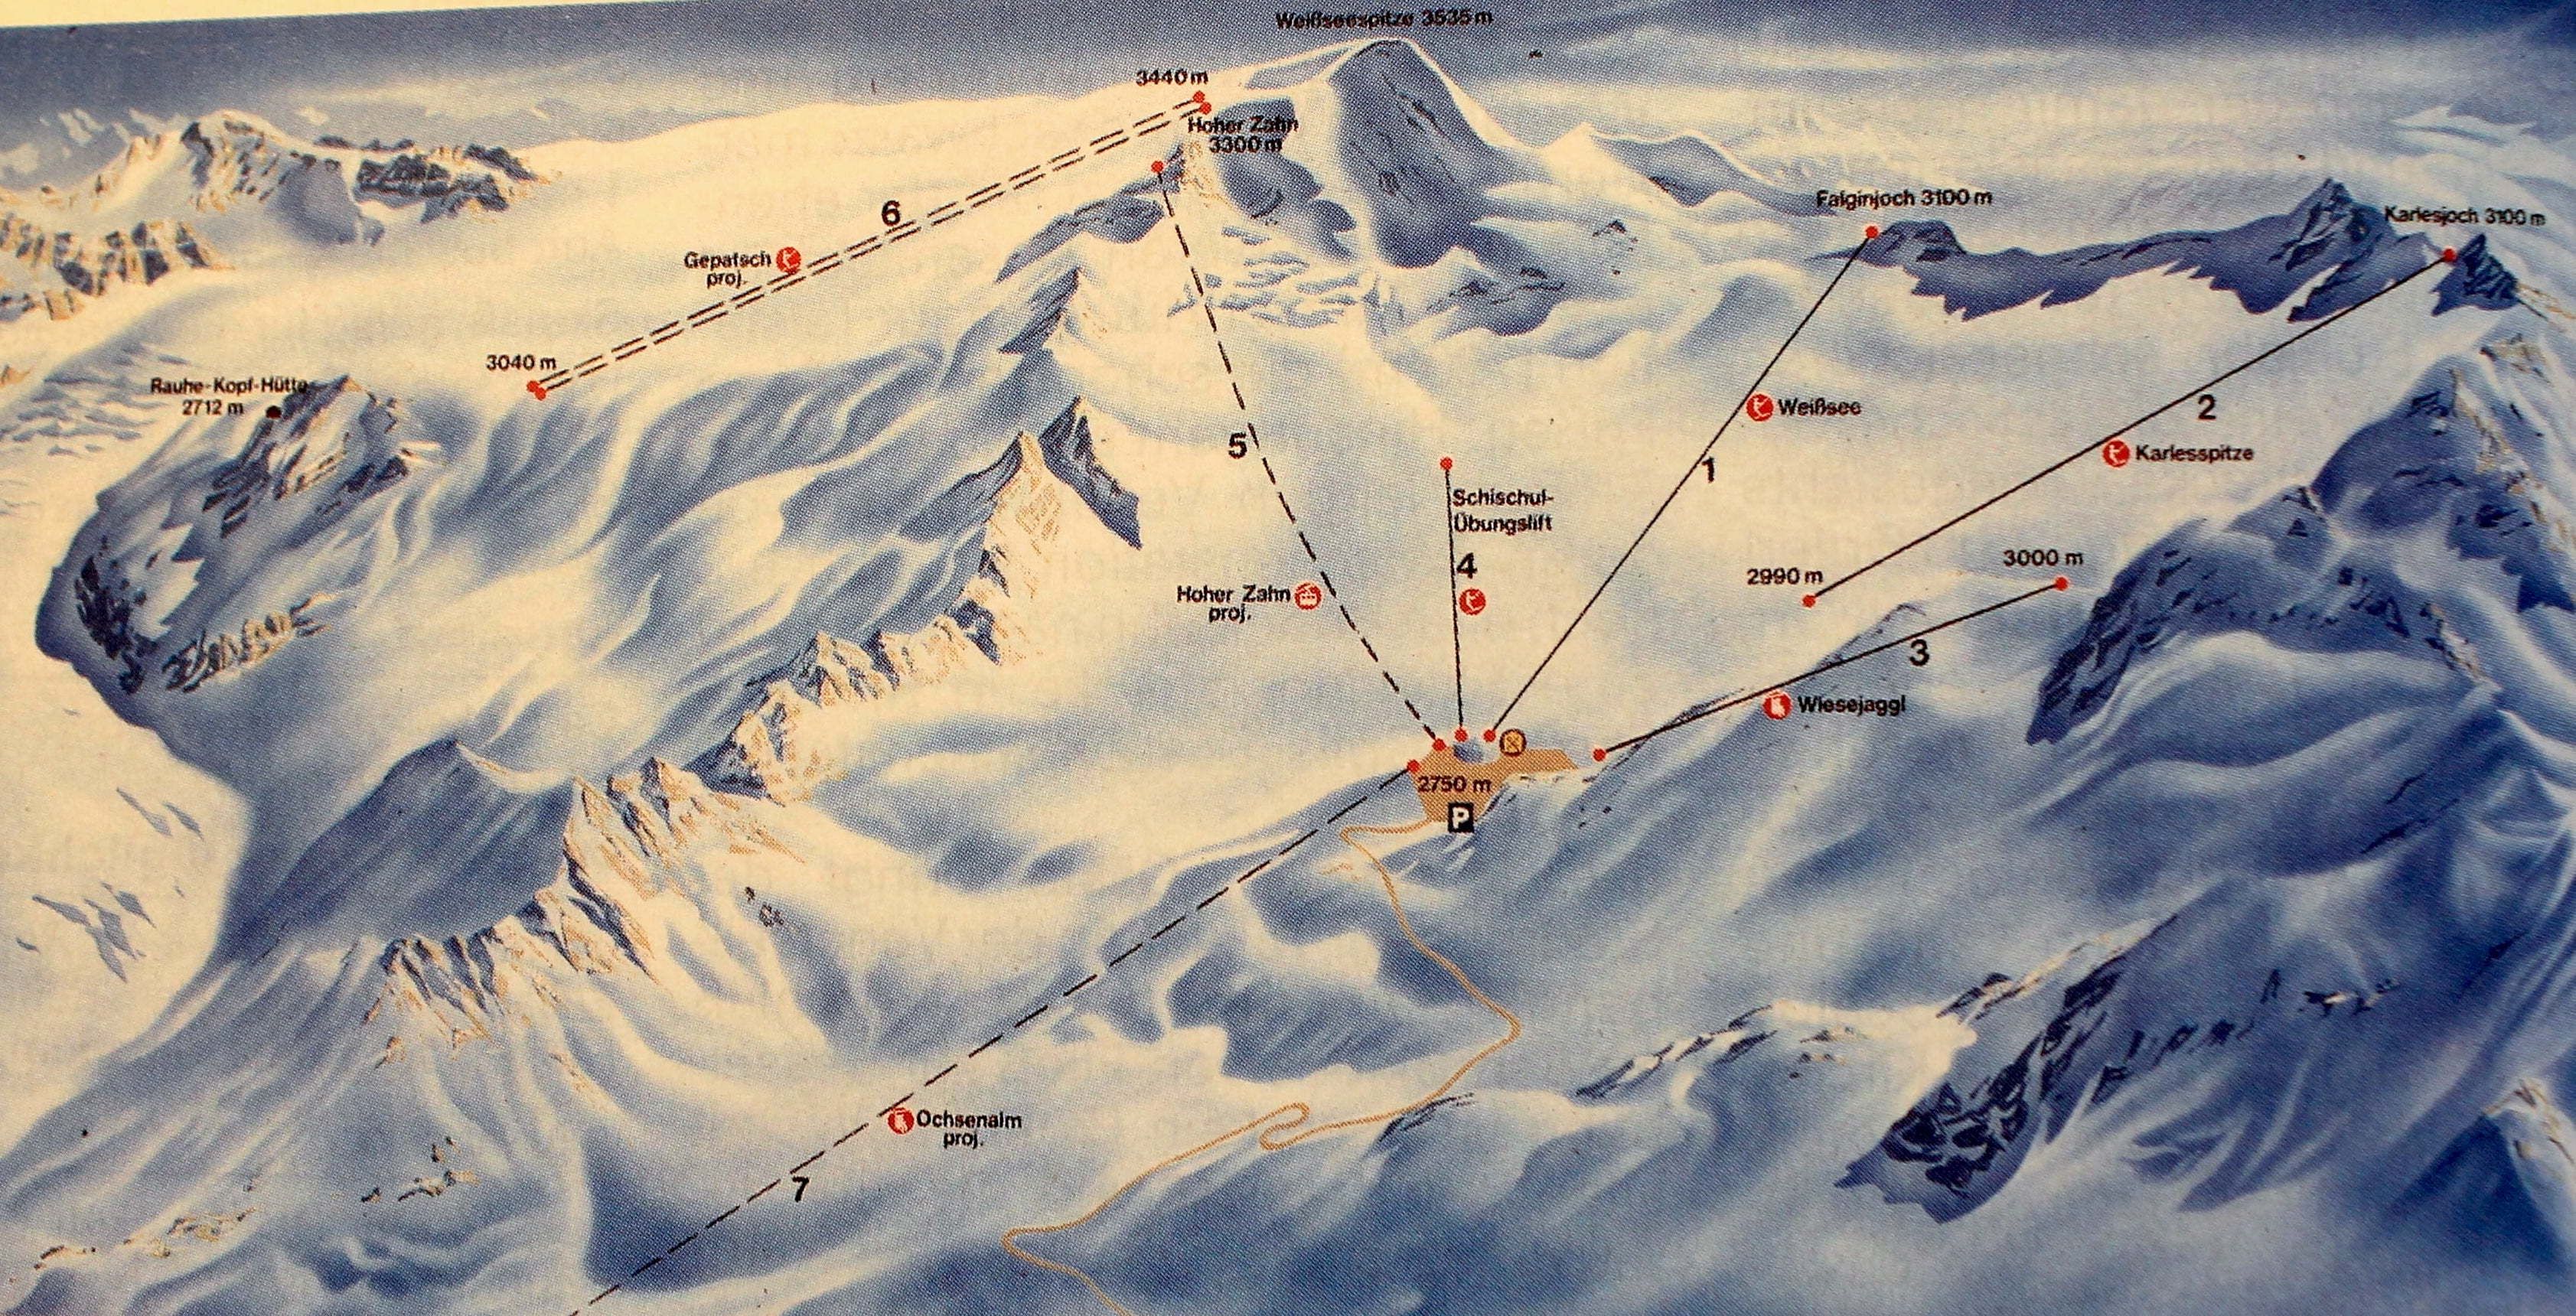 Pistekaartje uit de ADAC Skiatlas van 1985